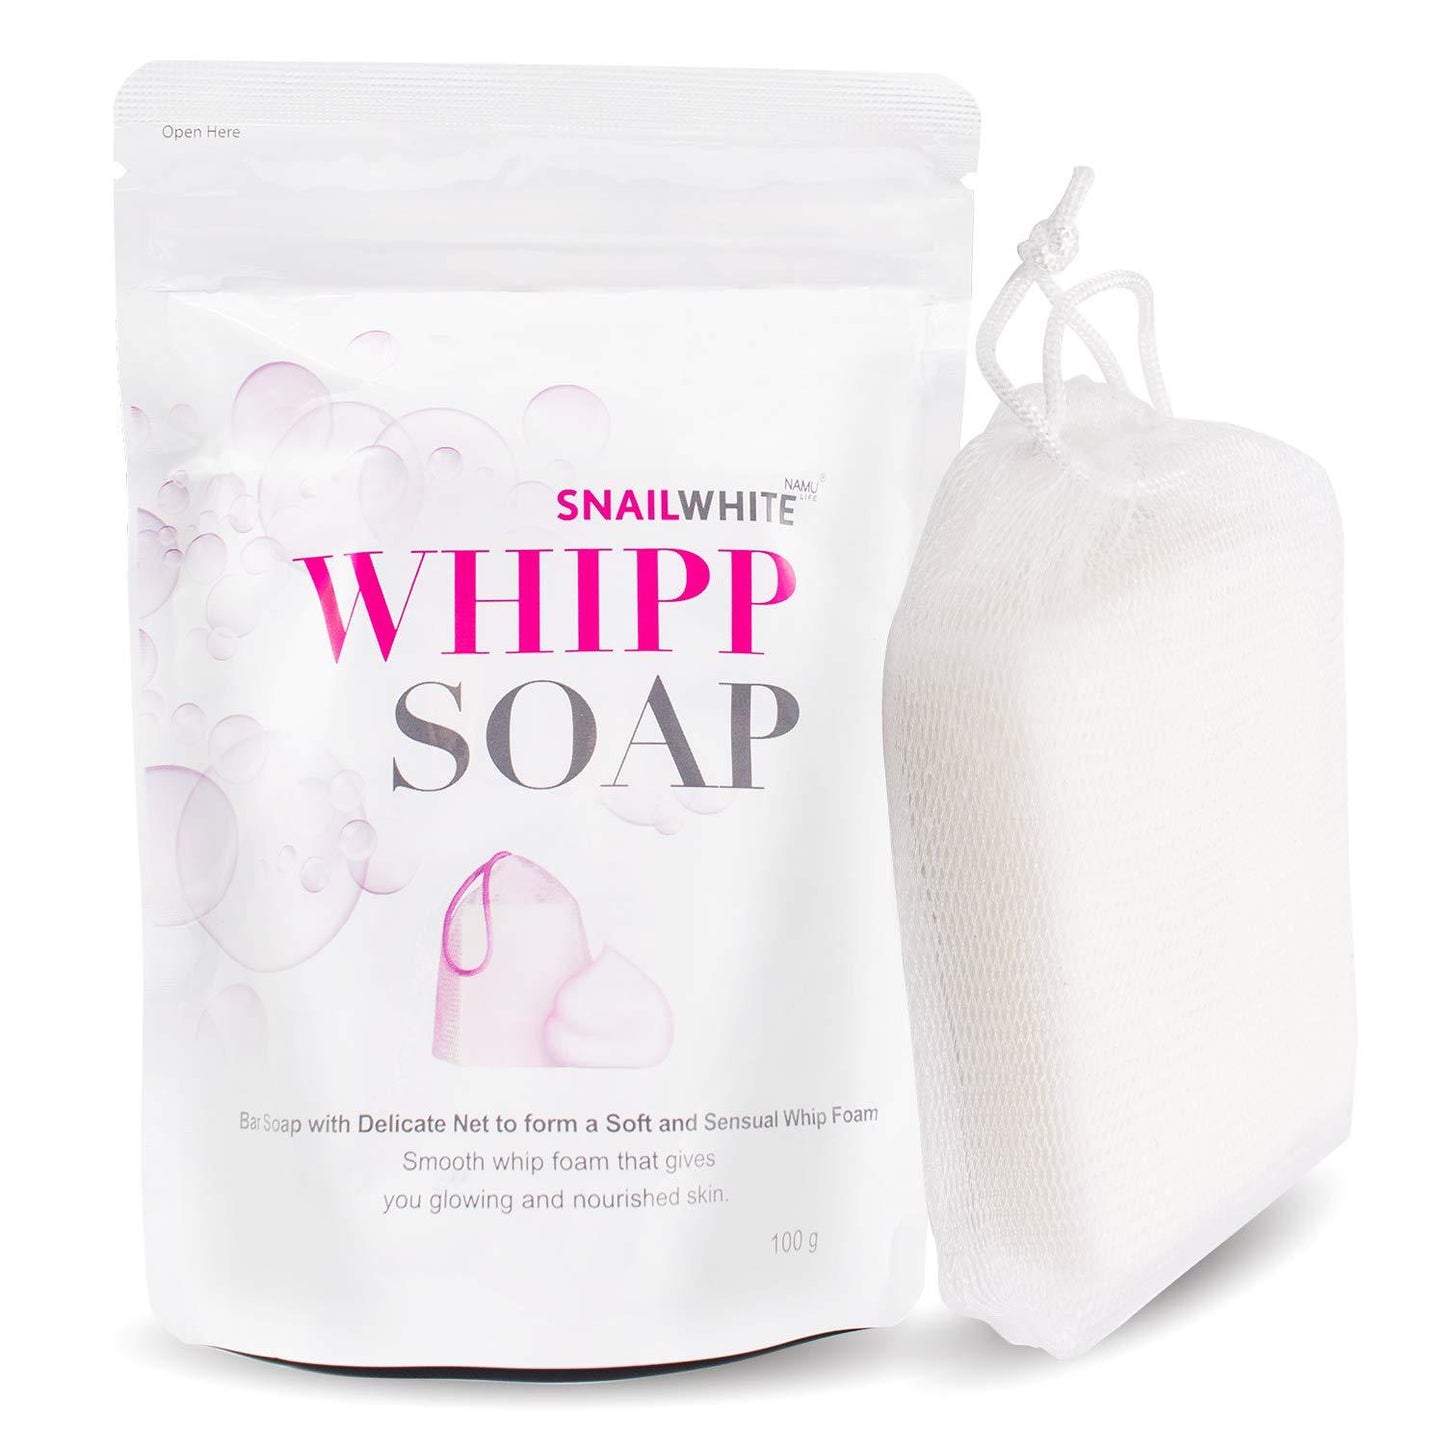 Snailwhite Whipp Soap - 100g